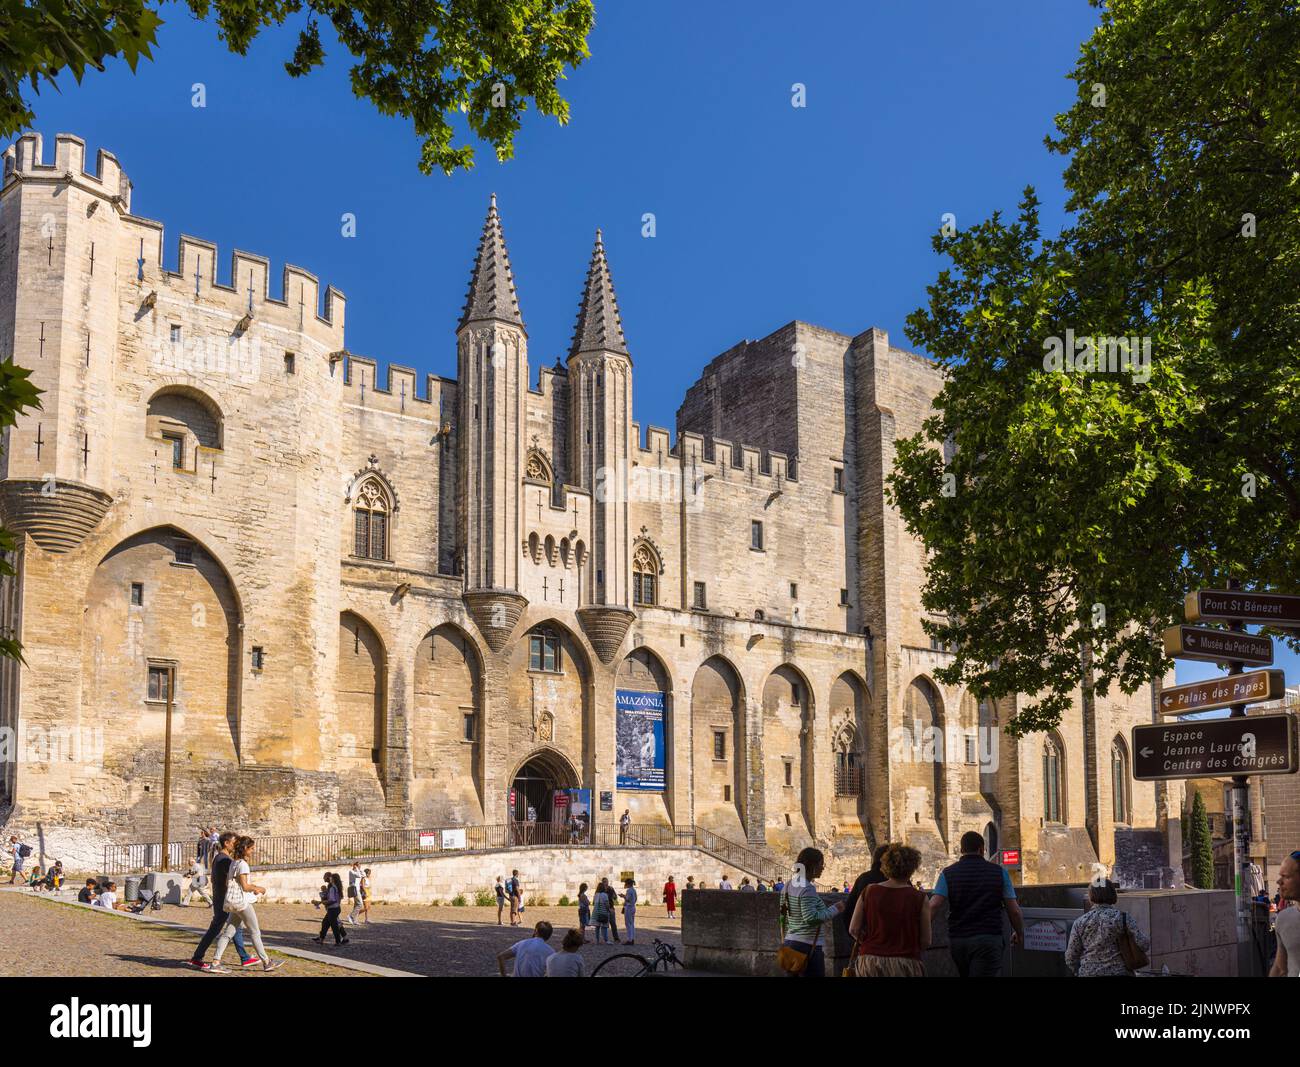 Palais des Papes - Palacio de los Papas, Aviñón, Vaucluse, Francia. El centro histórico de Aviñón está declarado Patrimonio de la Humanidad por la UNESCO. Foto de stock